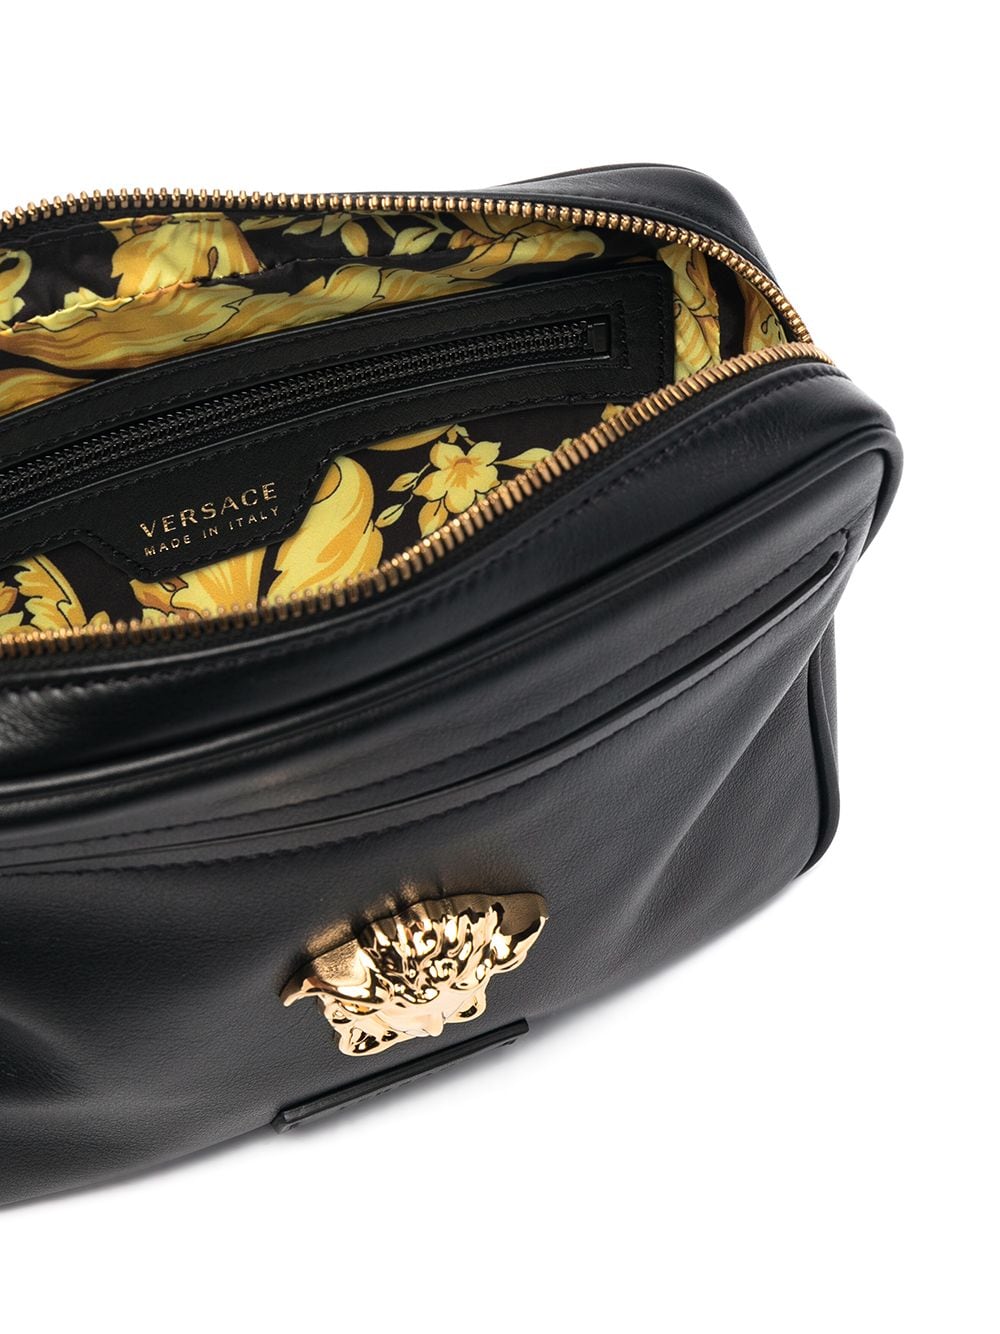 фото Versace поясная сумка с декором medusa